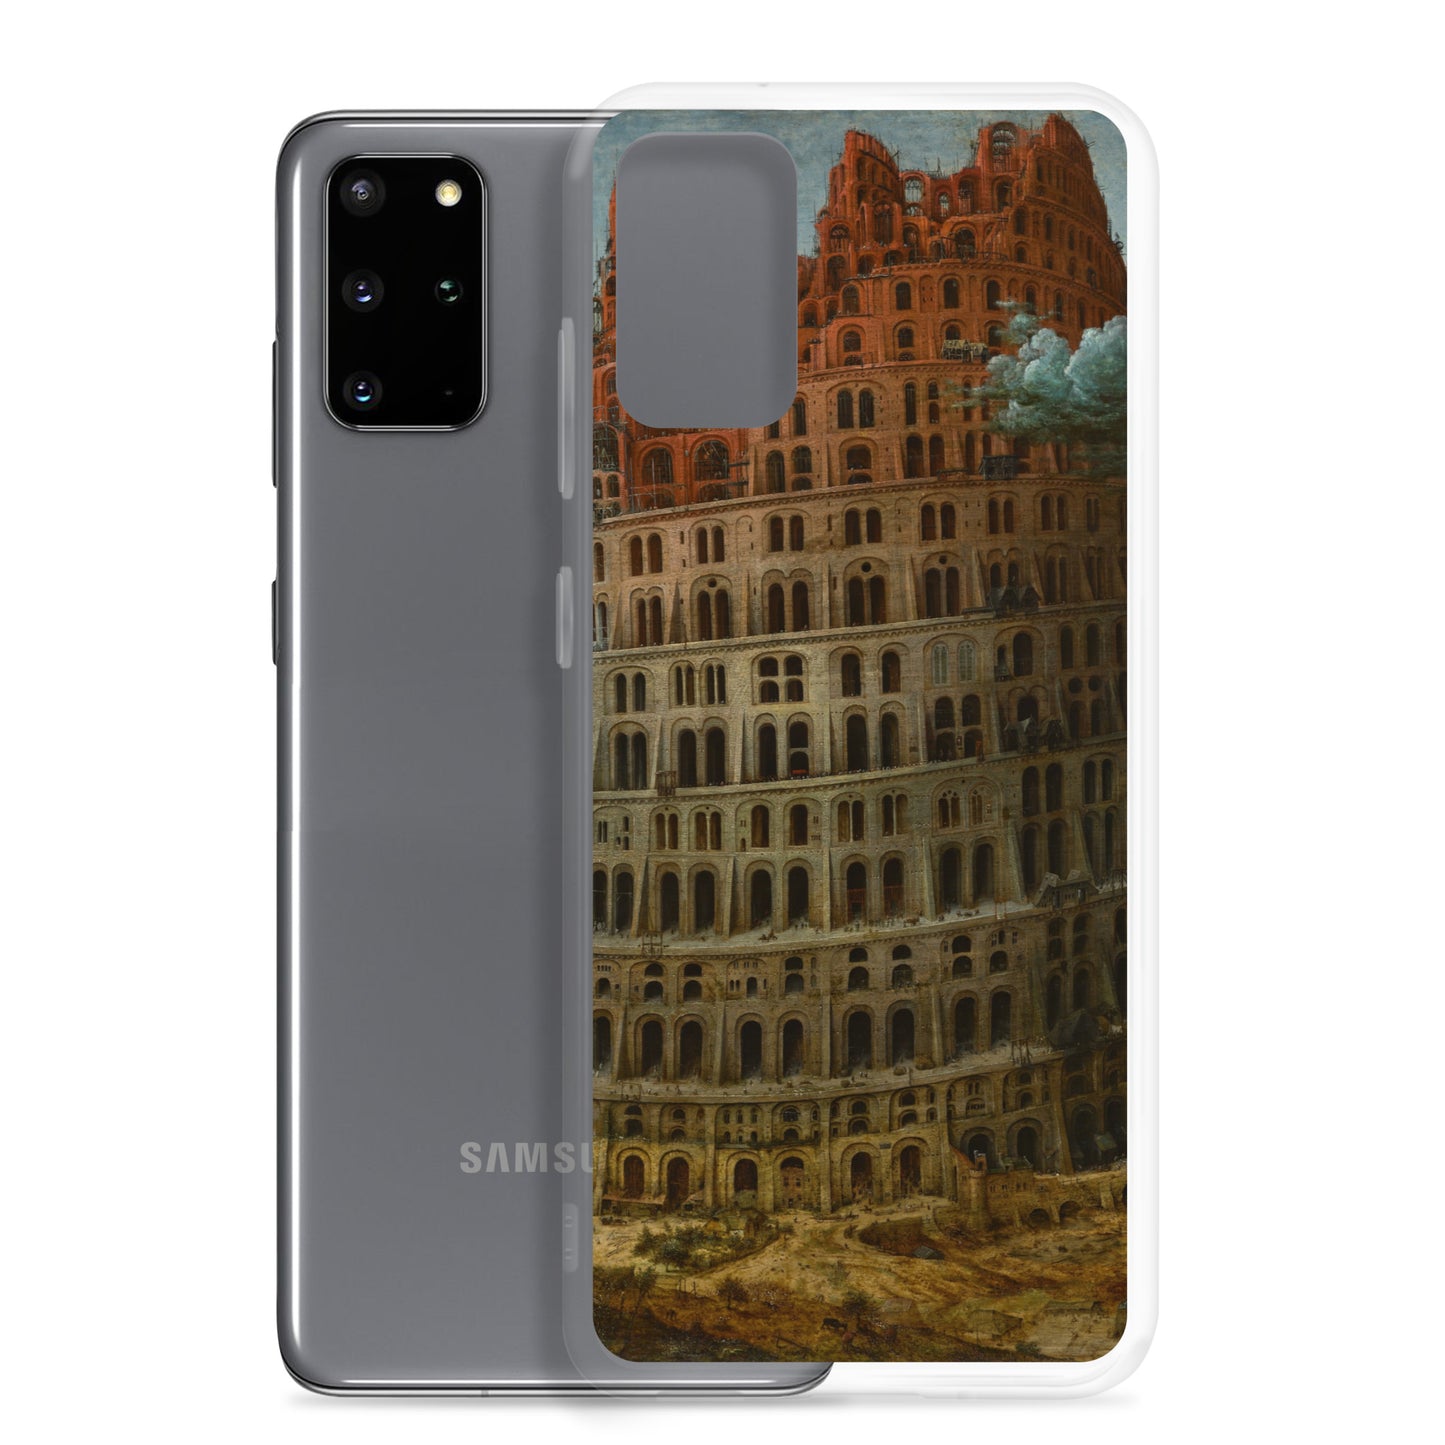 The Tower of Babel - Pieter Bruegel the Eldercirca 1568 - Samsung Case